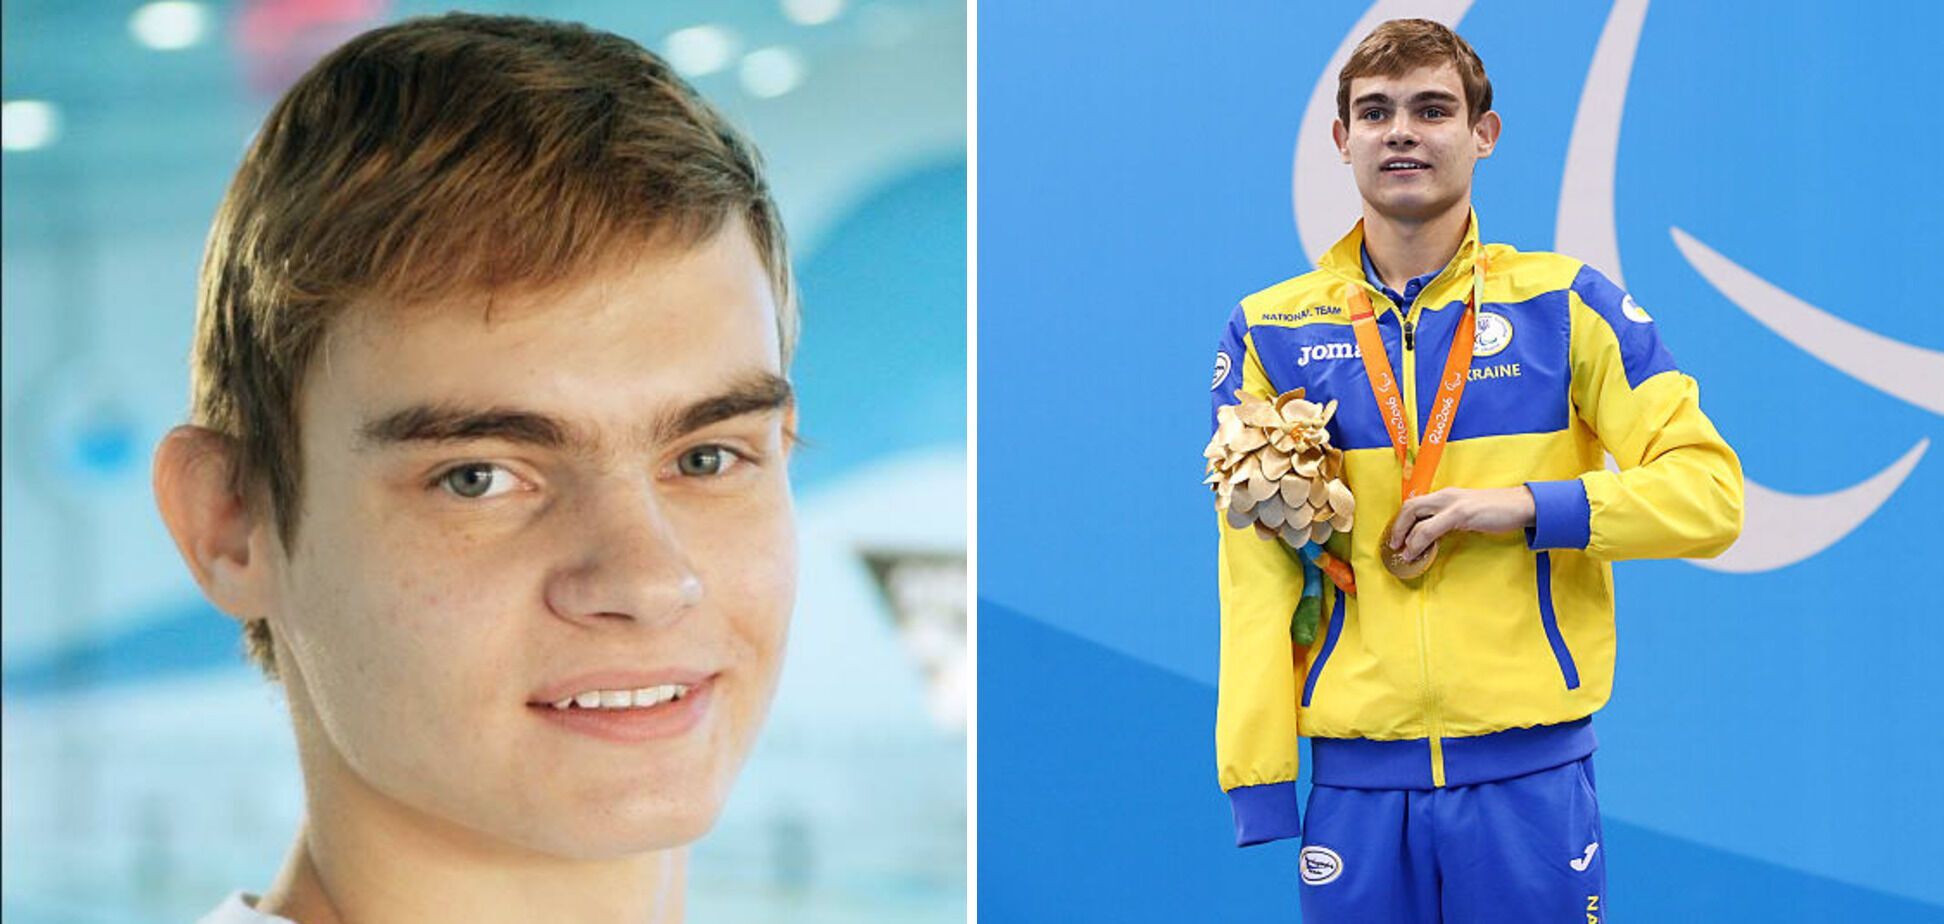 Євген Богодайко швидко став зіркою плавання.